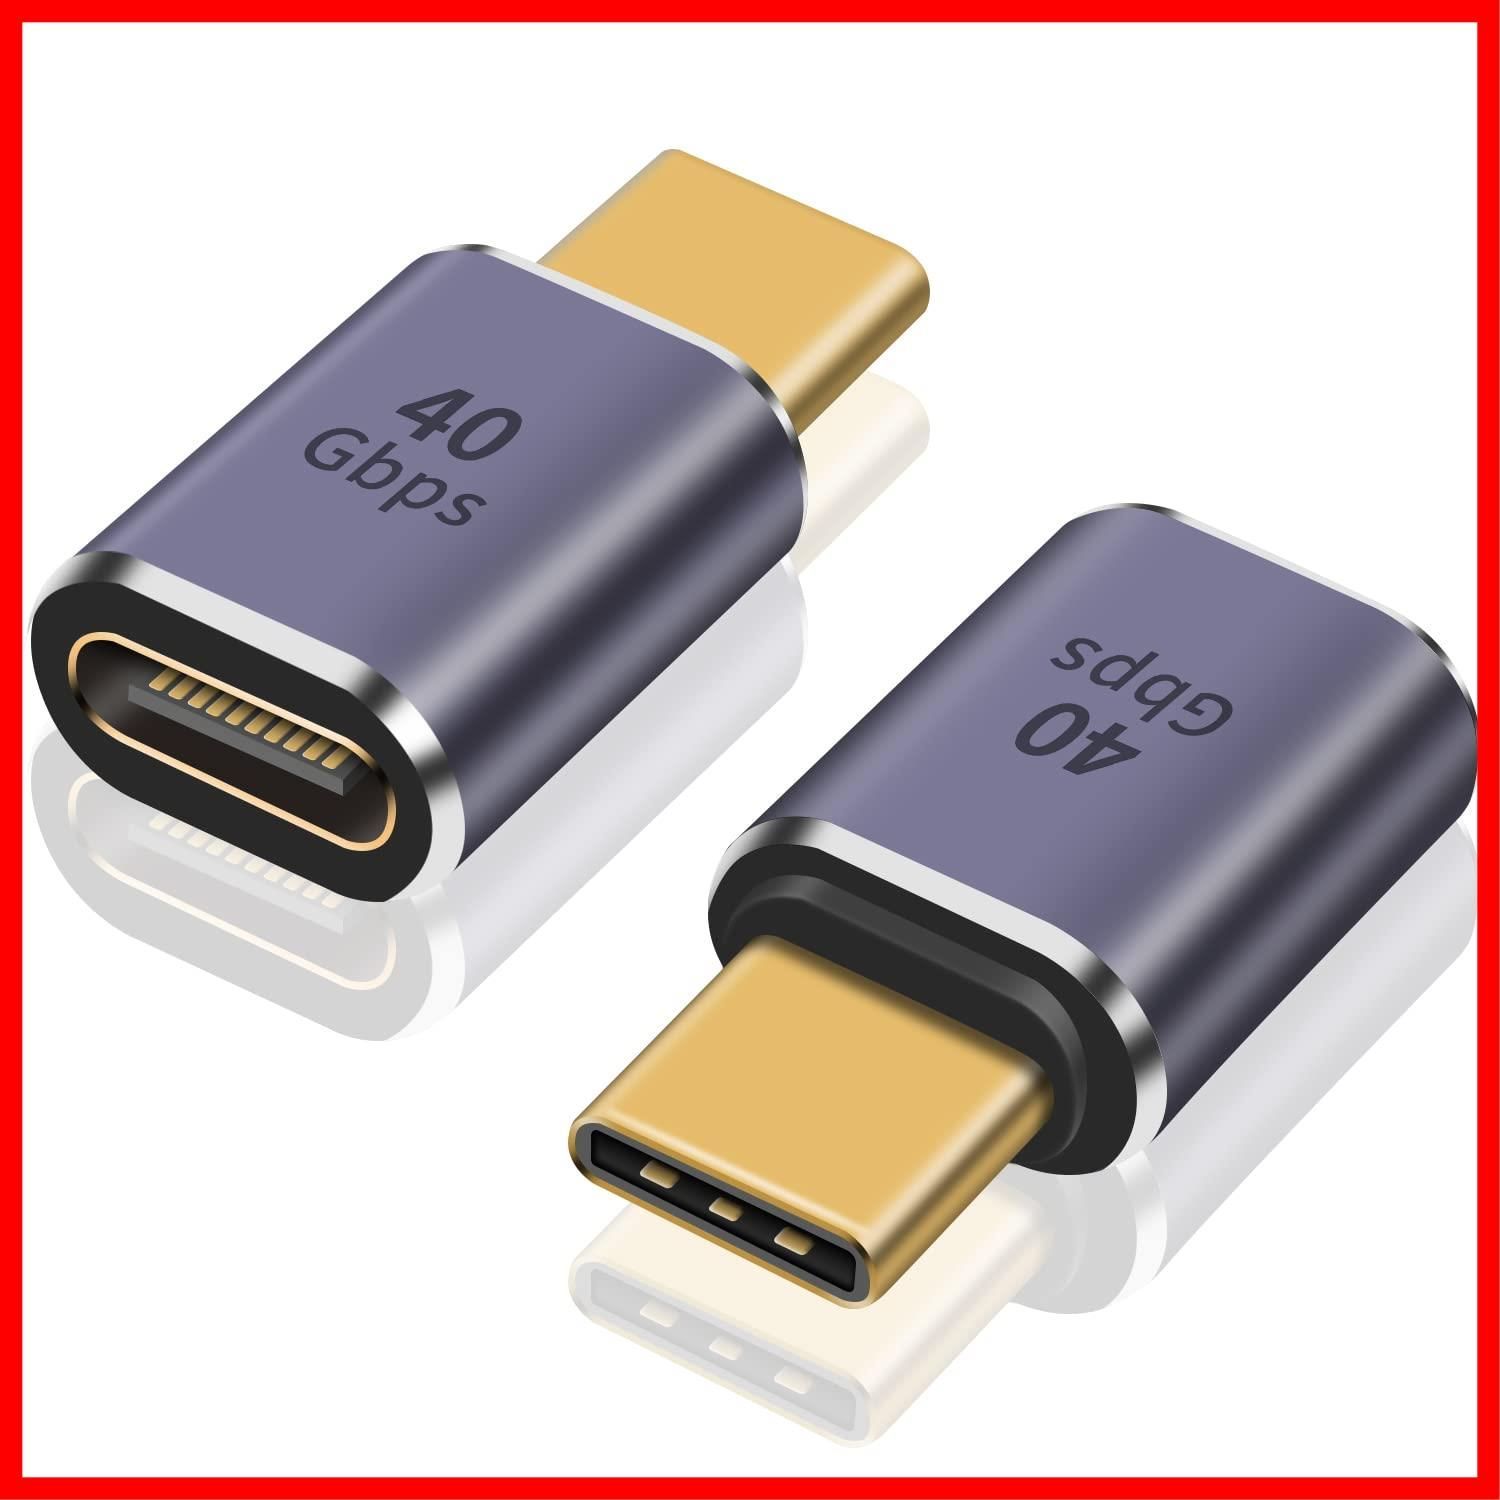 type c 2個とMicro USB4個のセット